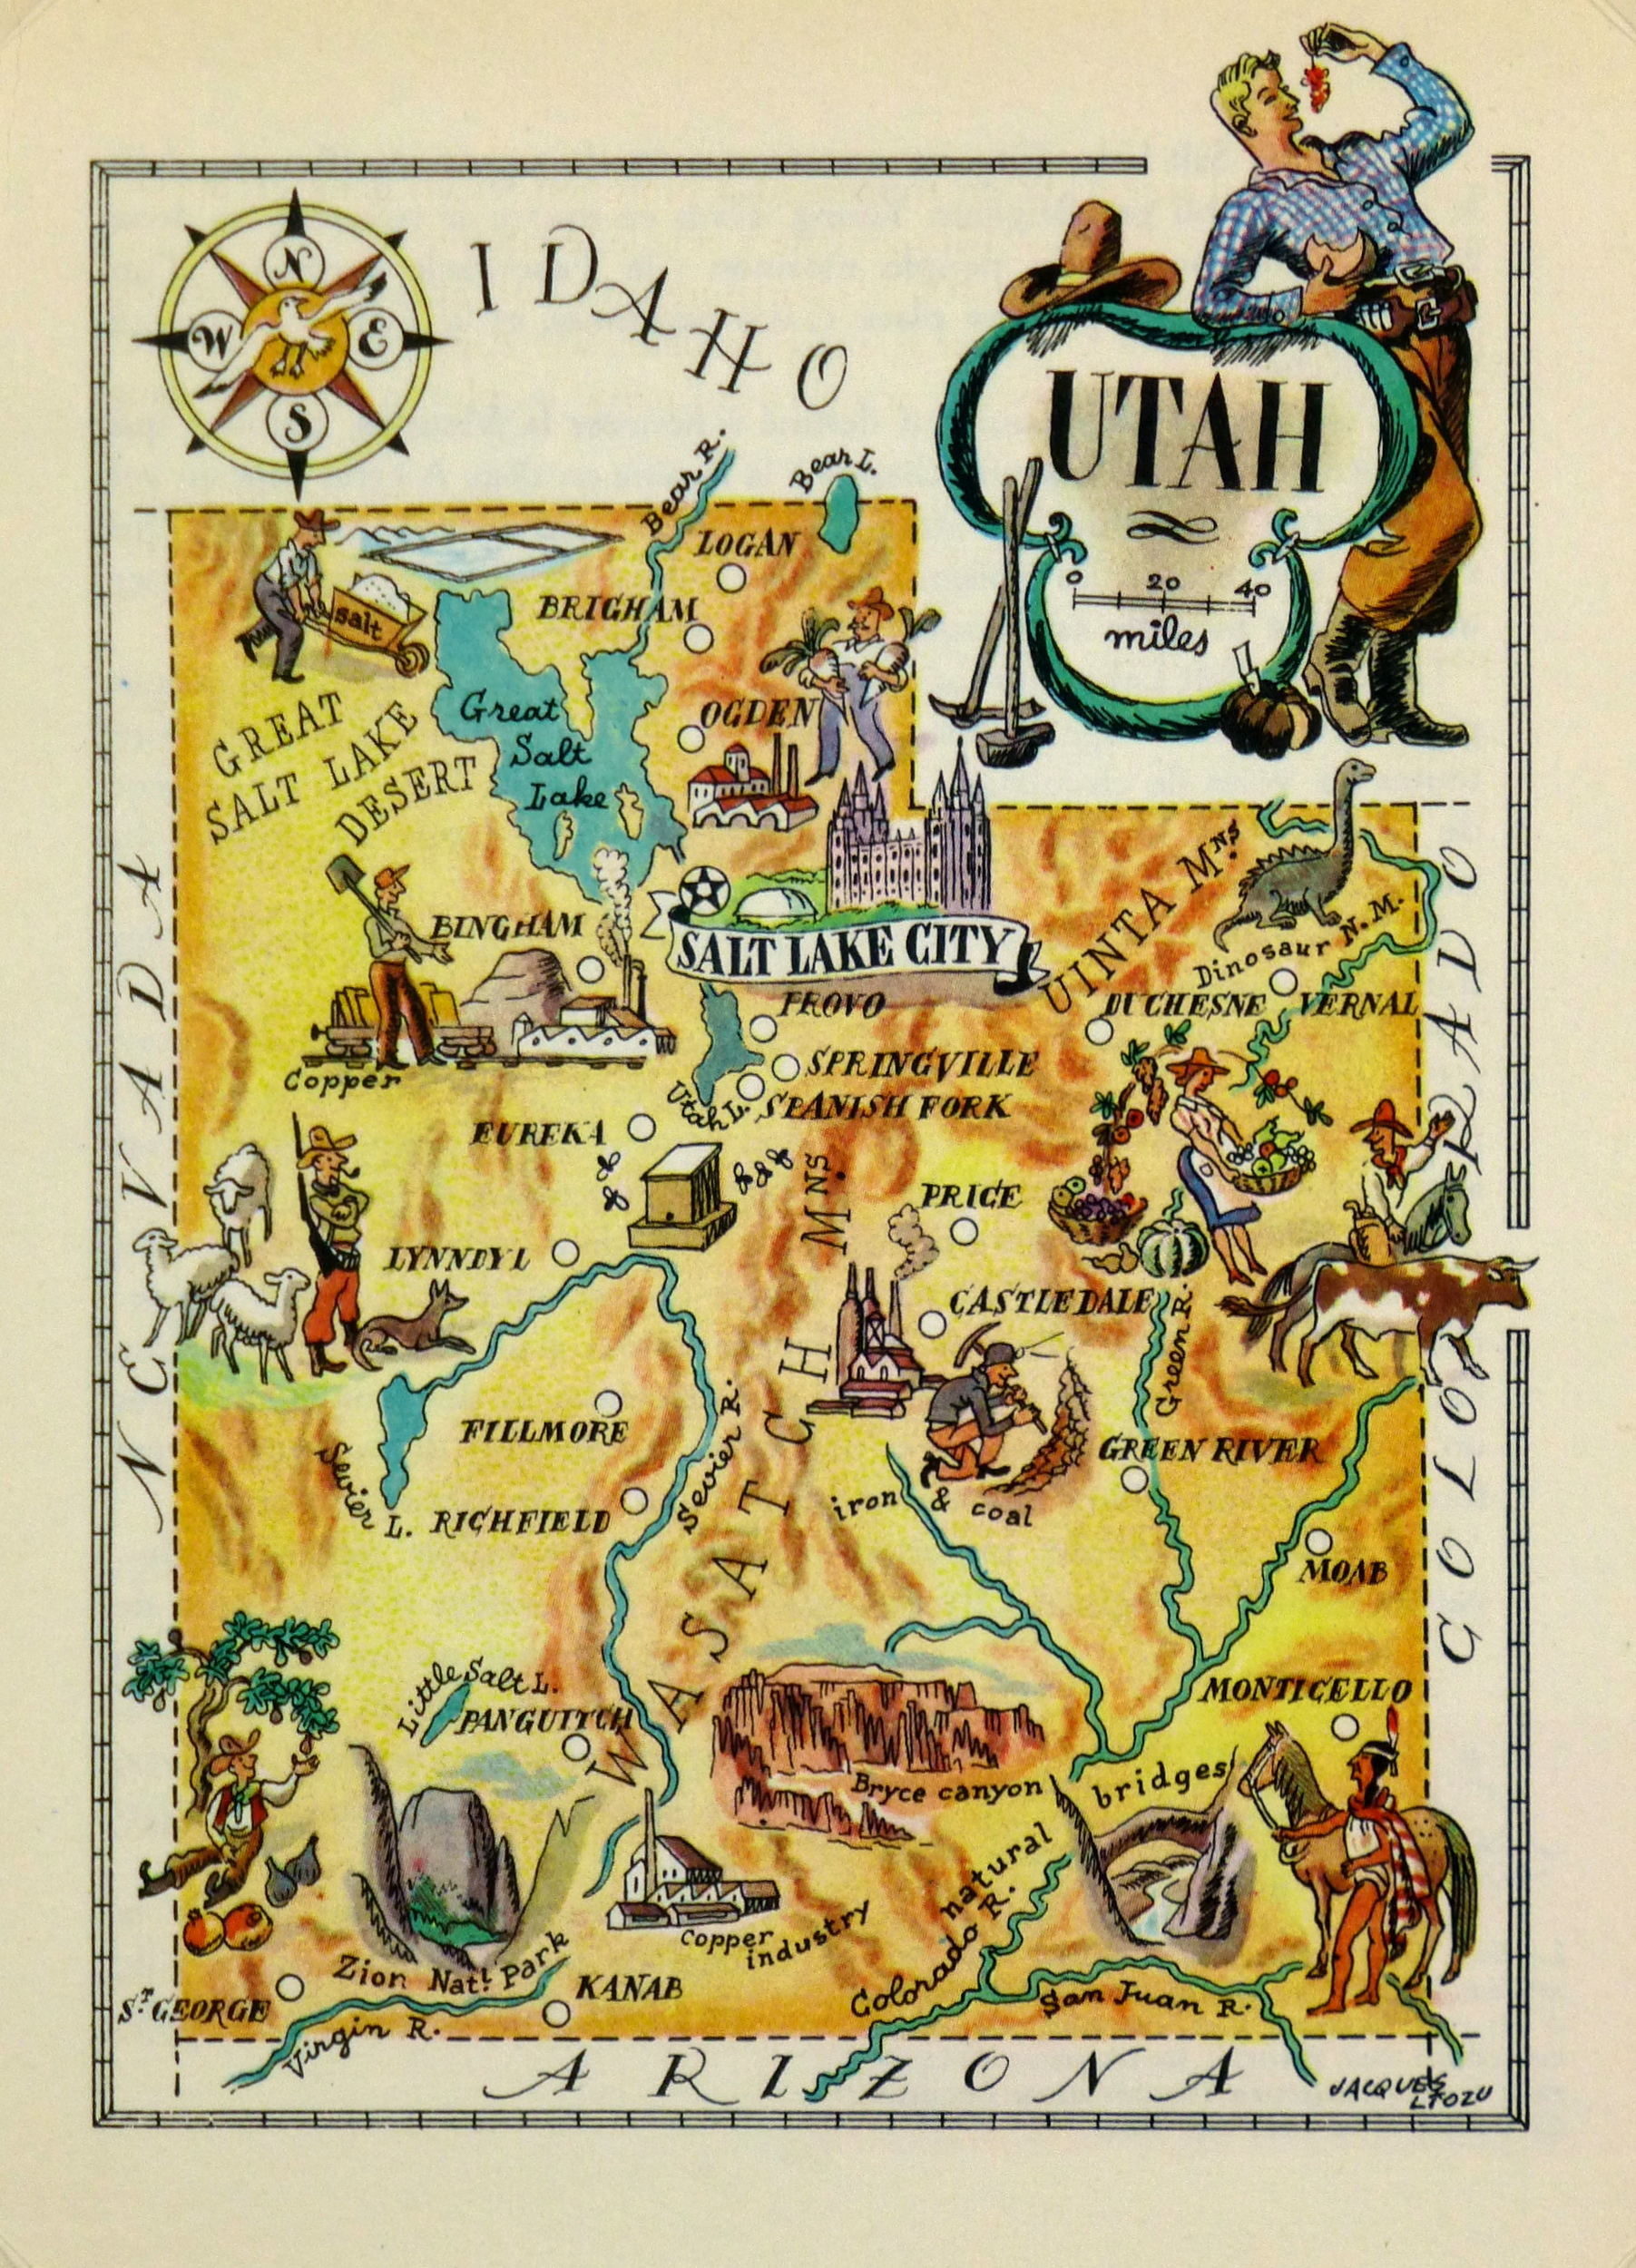 Utah Pictorial Map, 1946